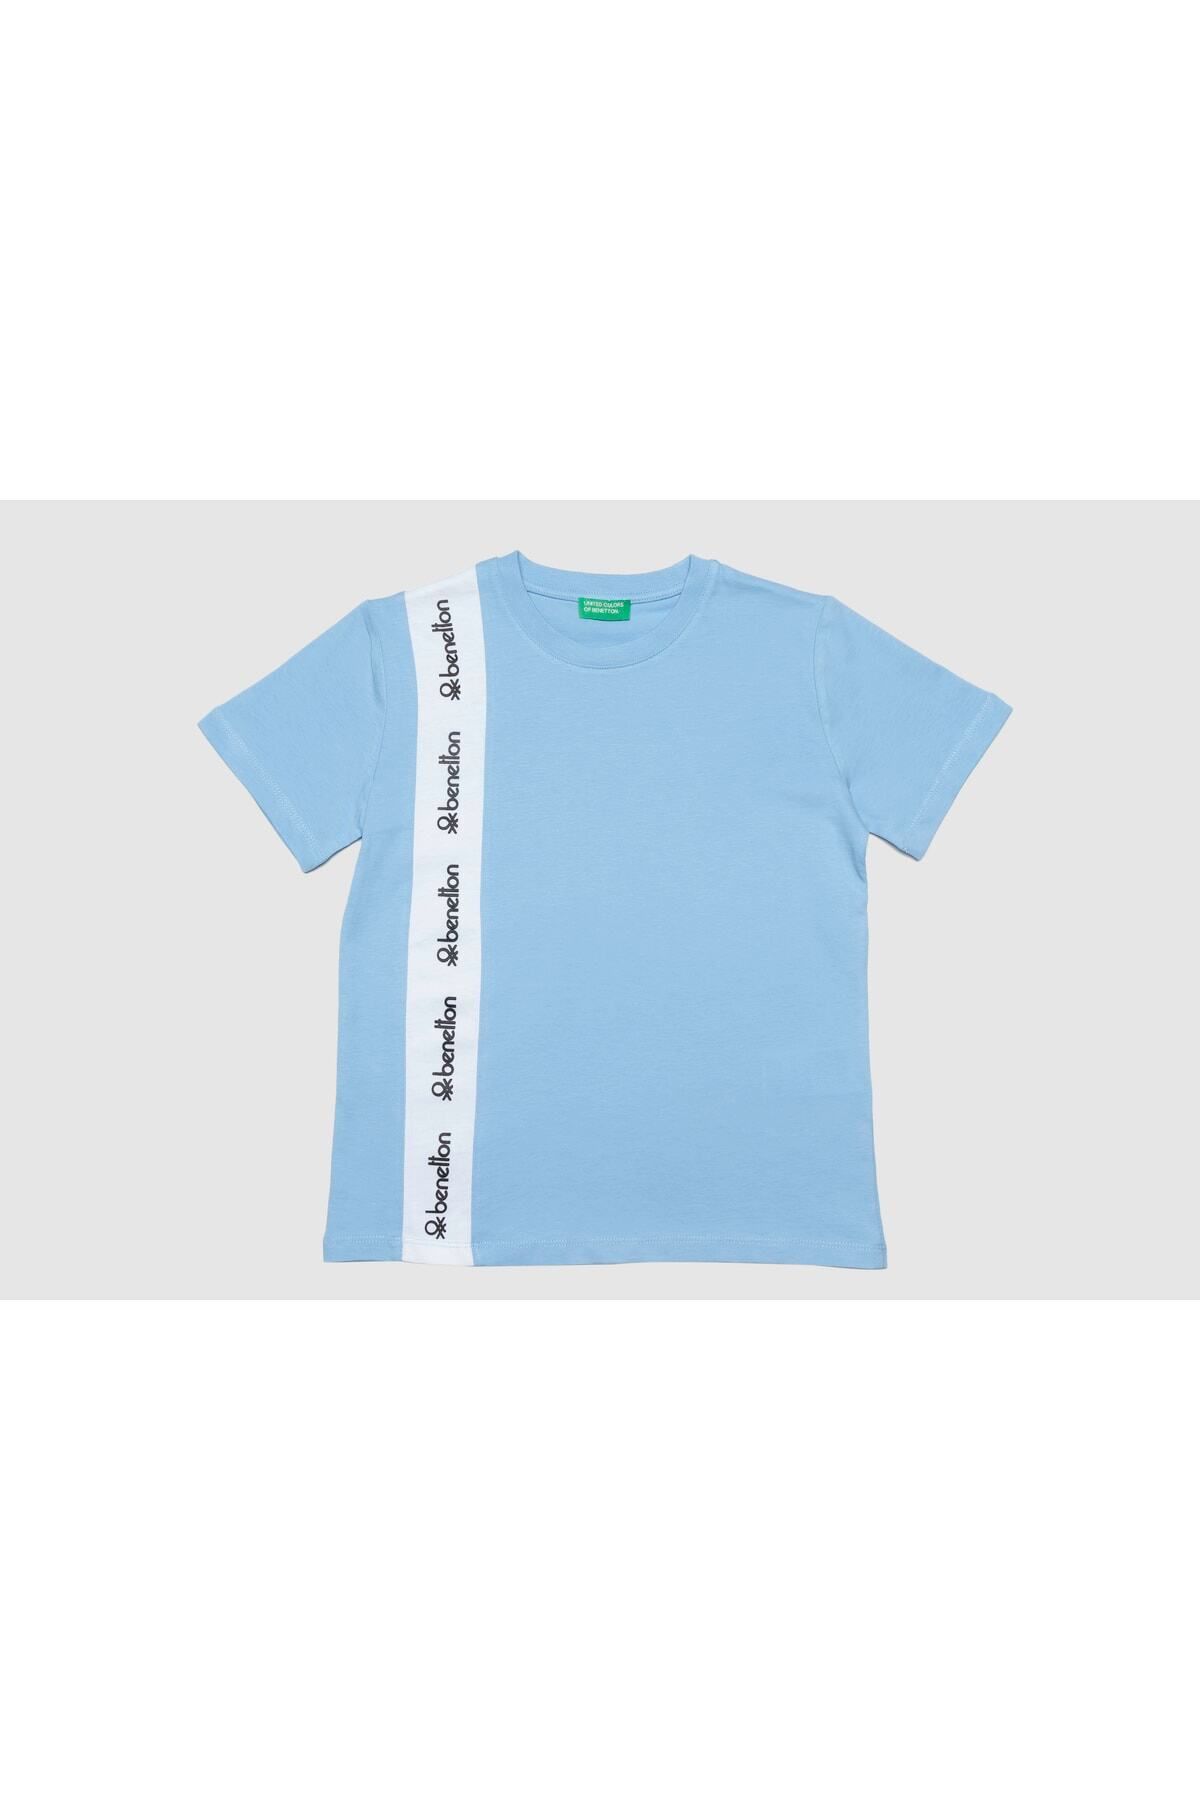 Benetton Erkek Çocuk Tshirt Bnt-b20529 Mavi